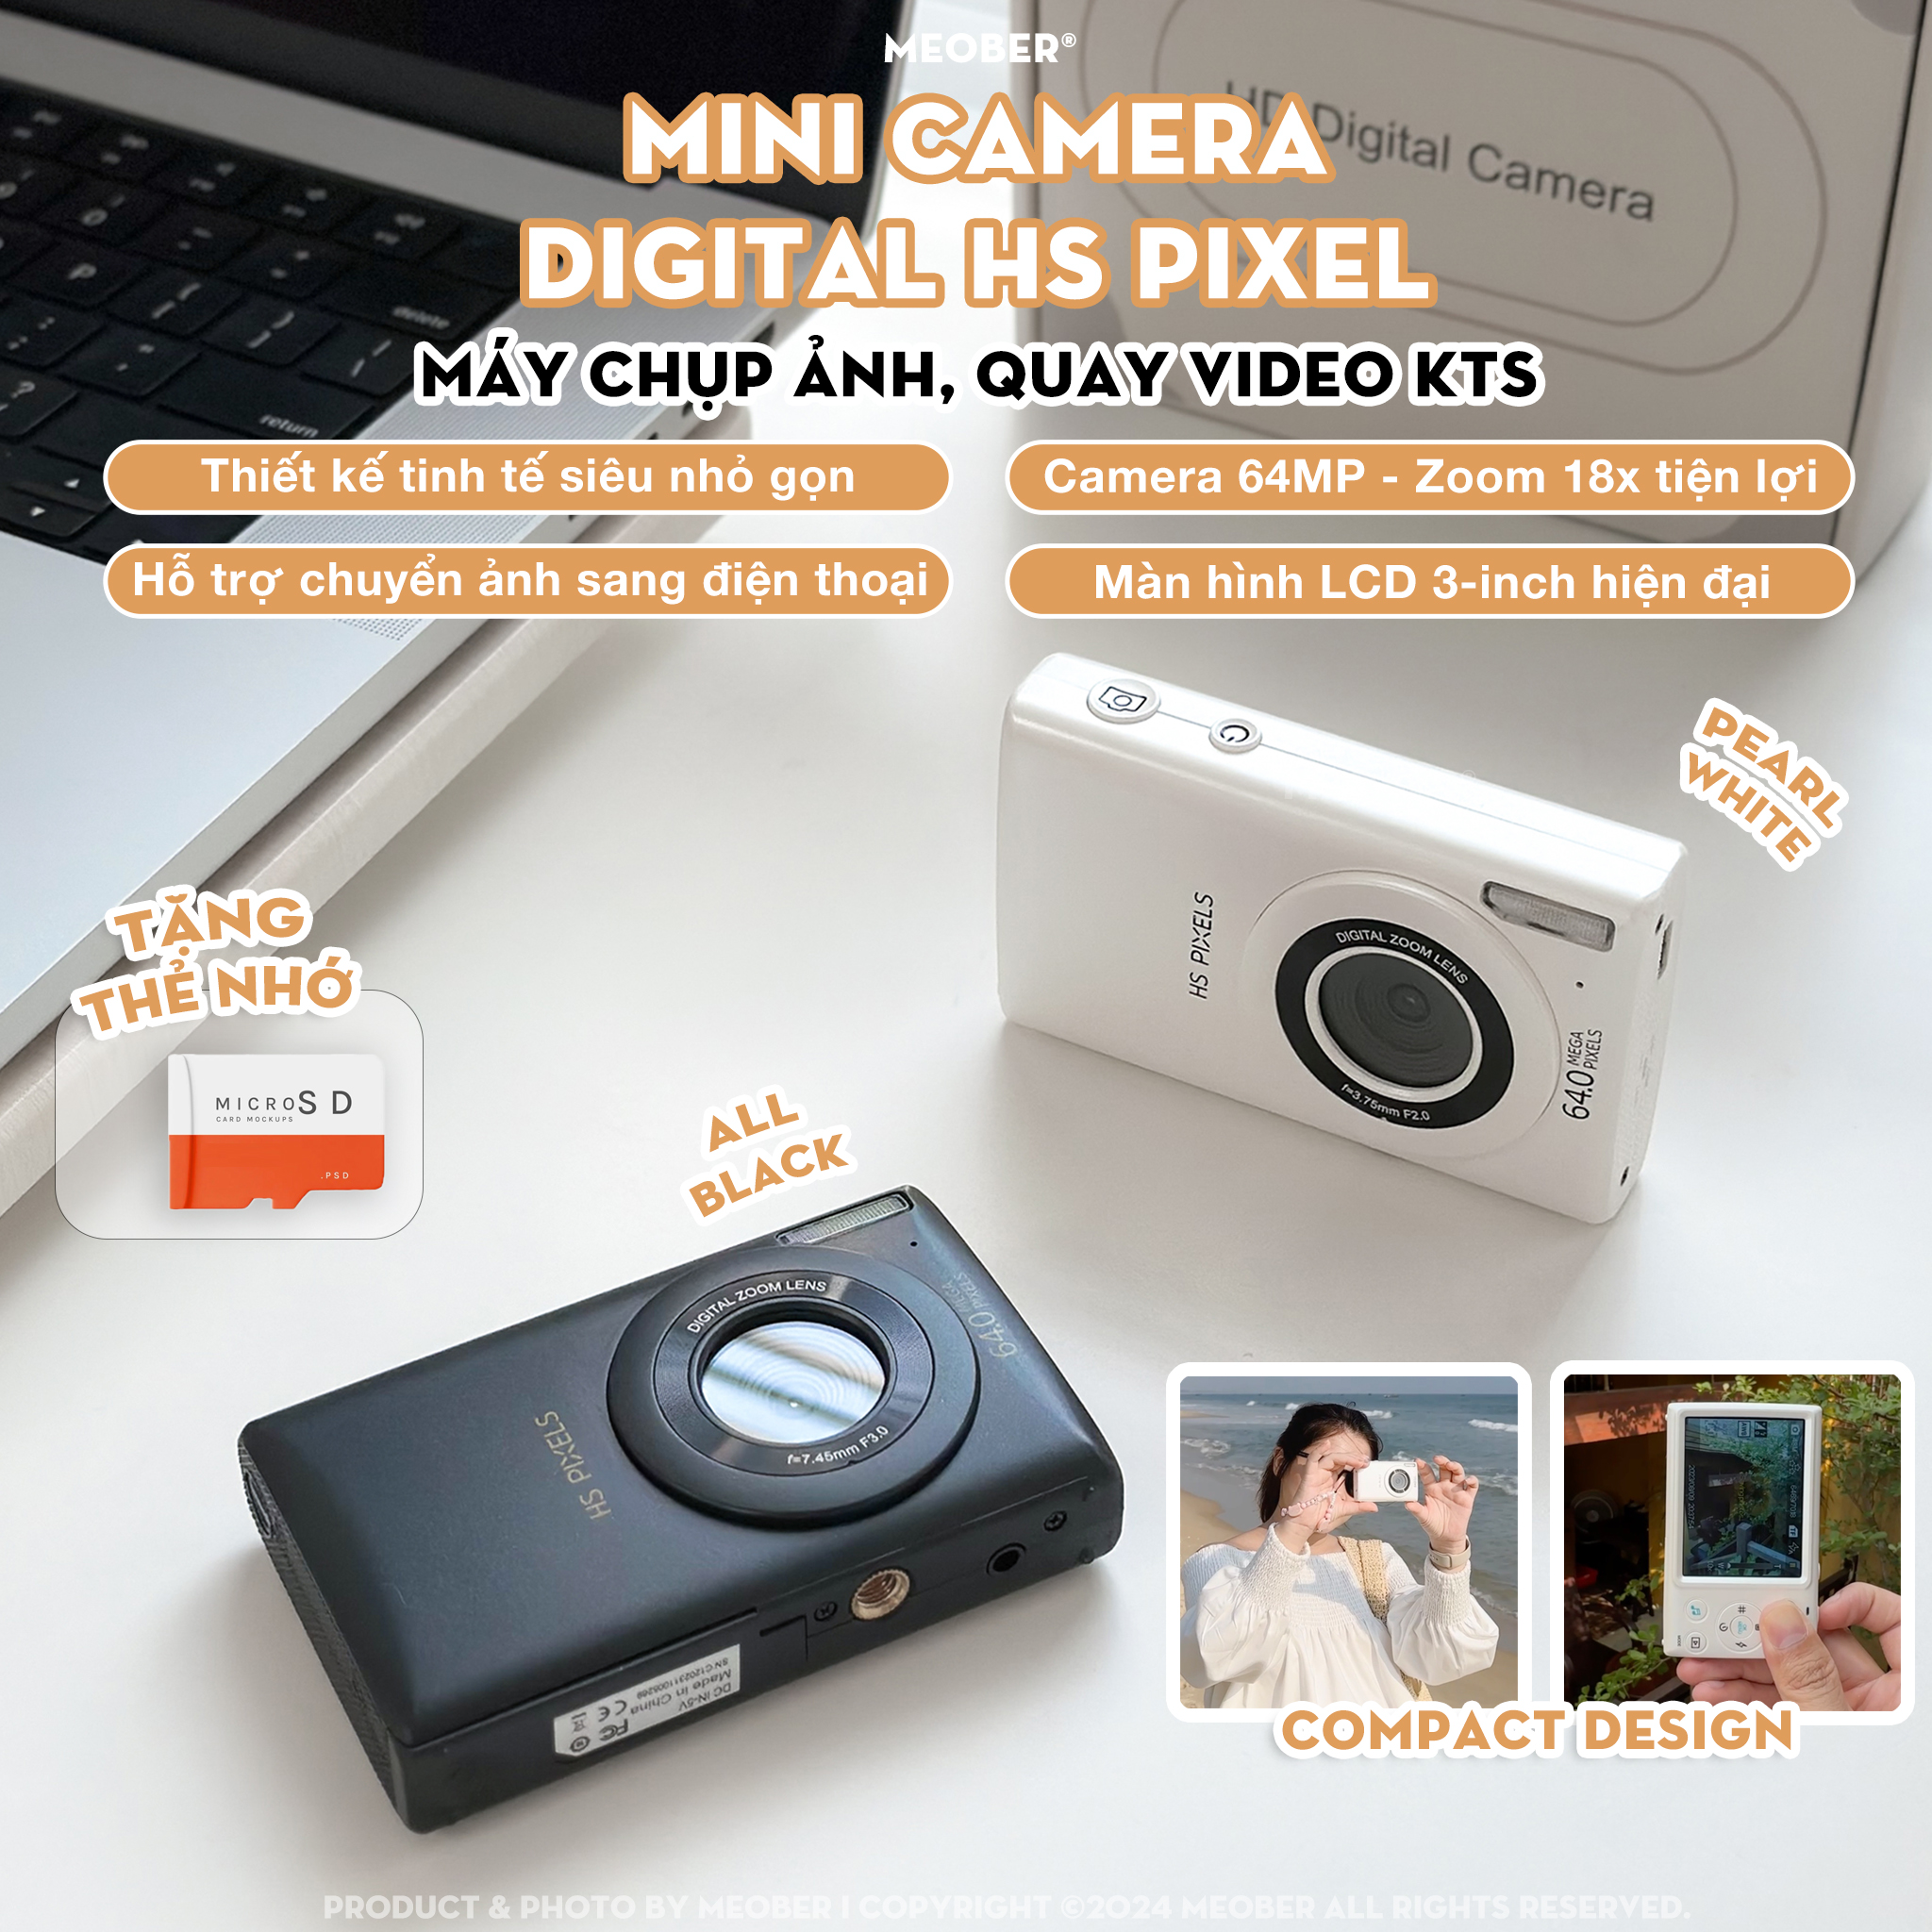 [Tặng thẻ nhớ] Máy ảnh kĩ thuật số digital mini camera HS Pixel - quay, chụp 64MP, siêu mỏng nhỏ gọn by MèoBer